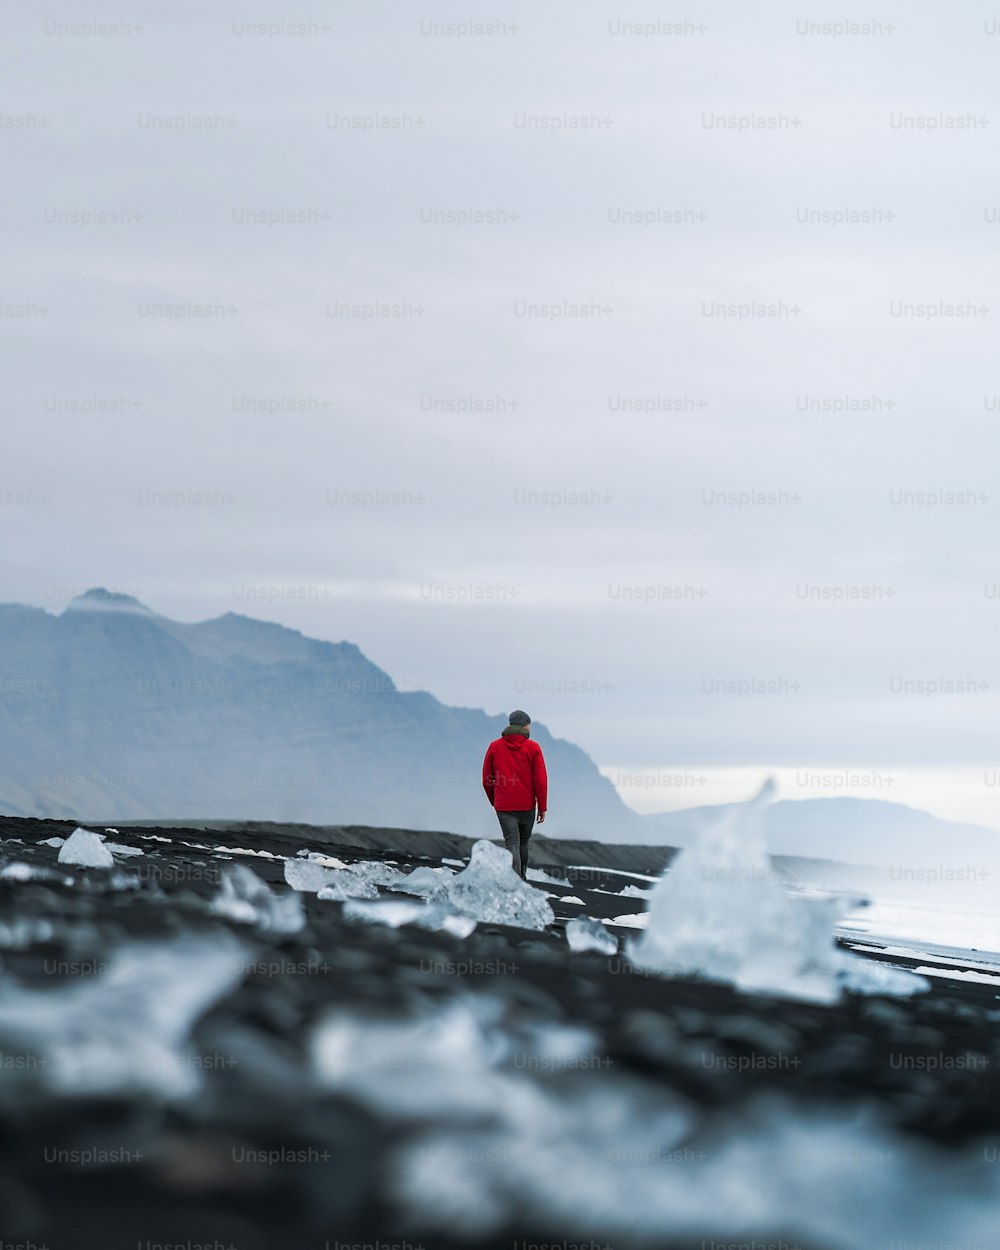 빨간 재킷을 입은 남자가 얼음 위에 서 있다